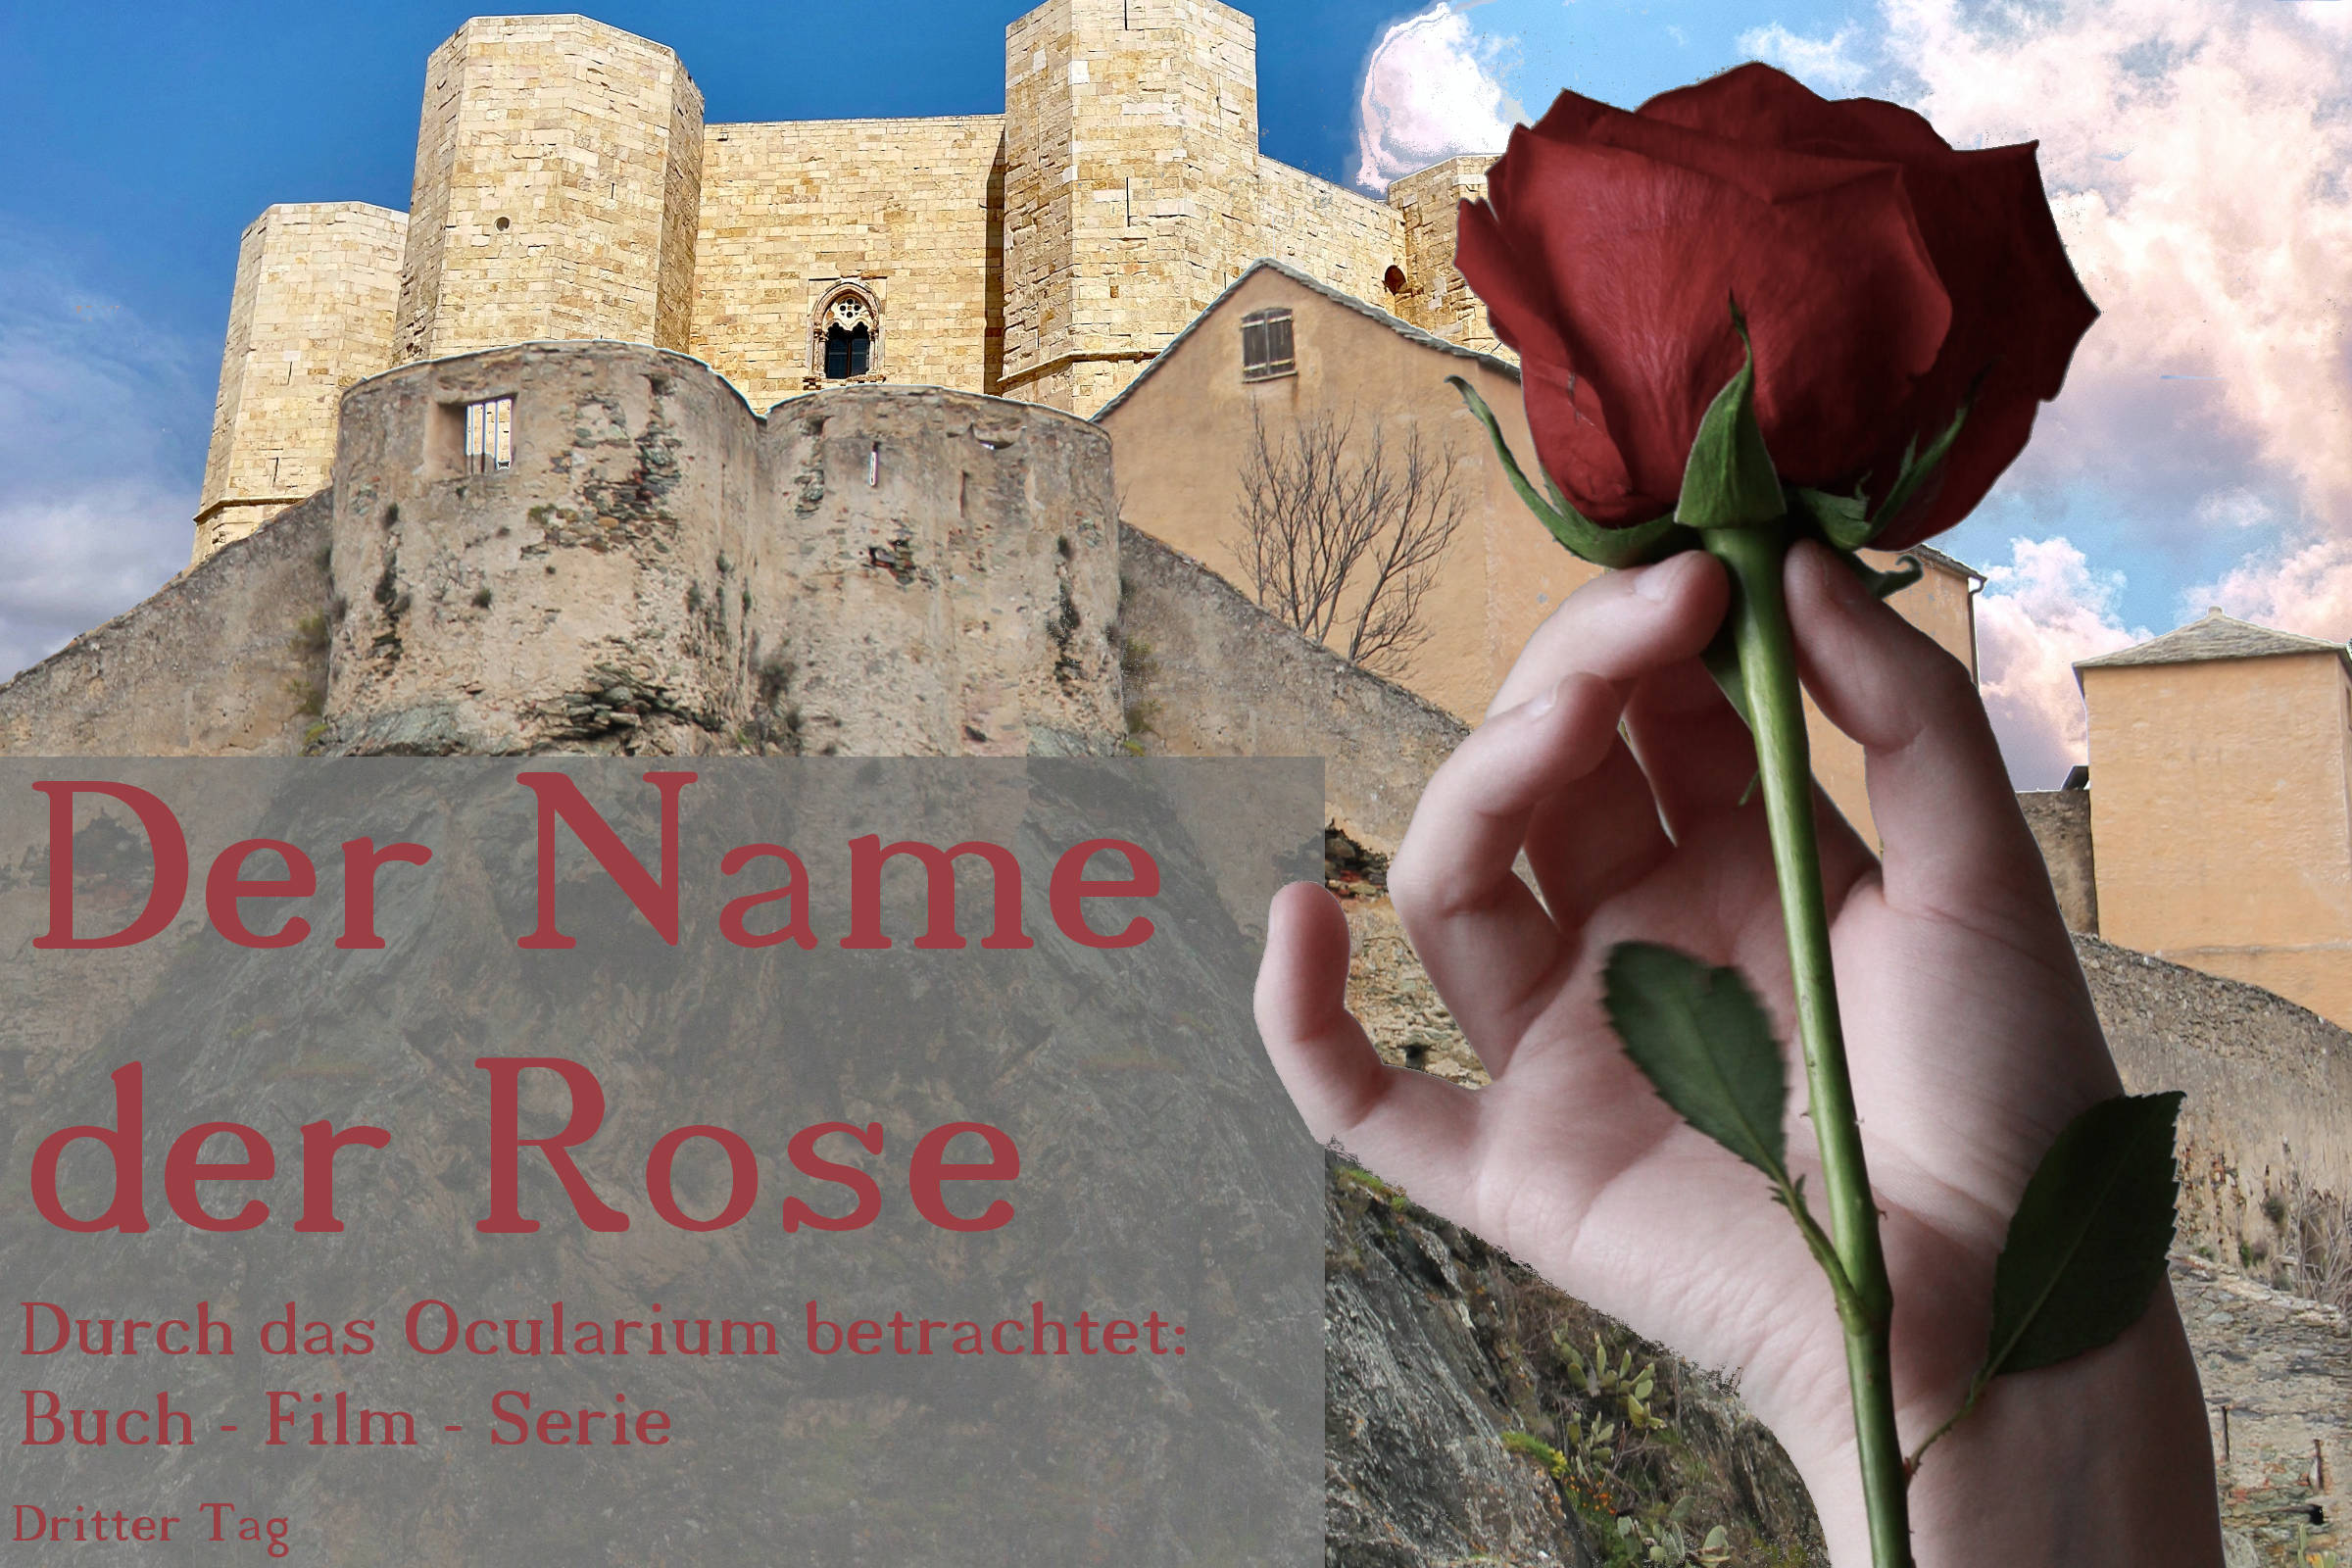 Der Name der Rose – Durch das Ocularium betrachtet: Buch – Film – Serie | Dritter Tag